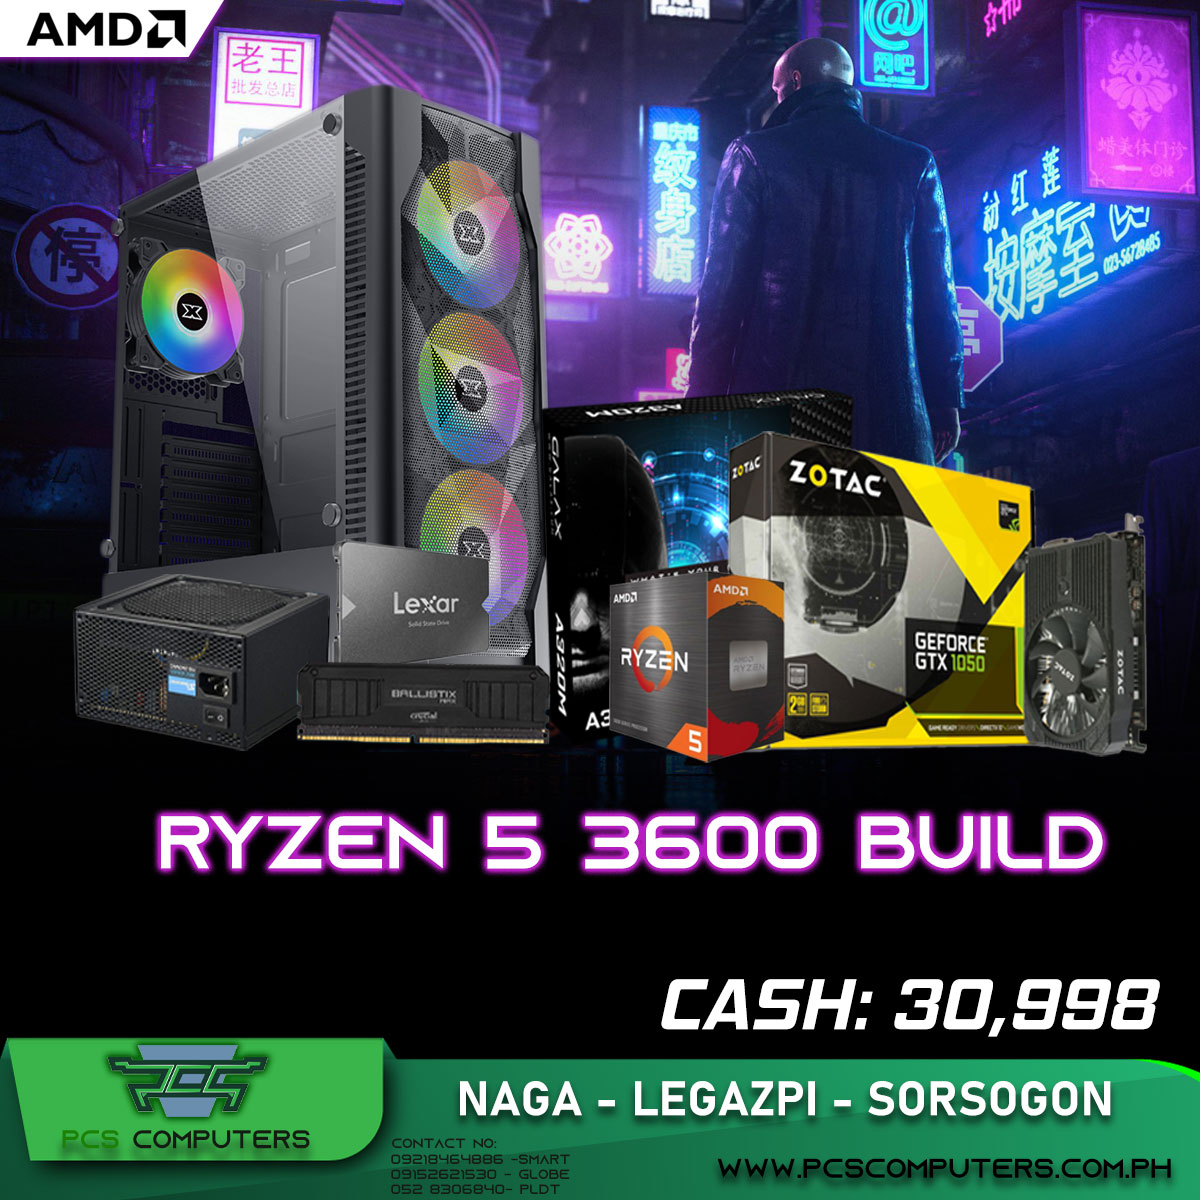 Ryzen 5 3600 Build 2-2022 - PCS Computers